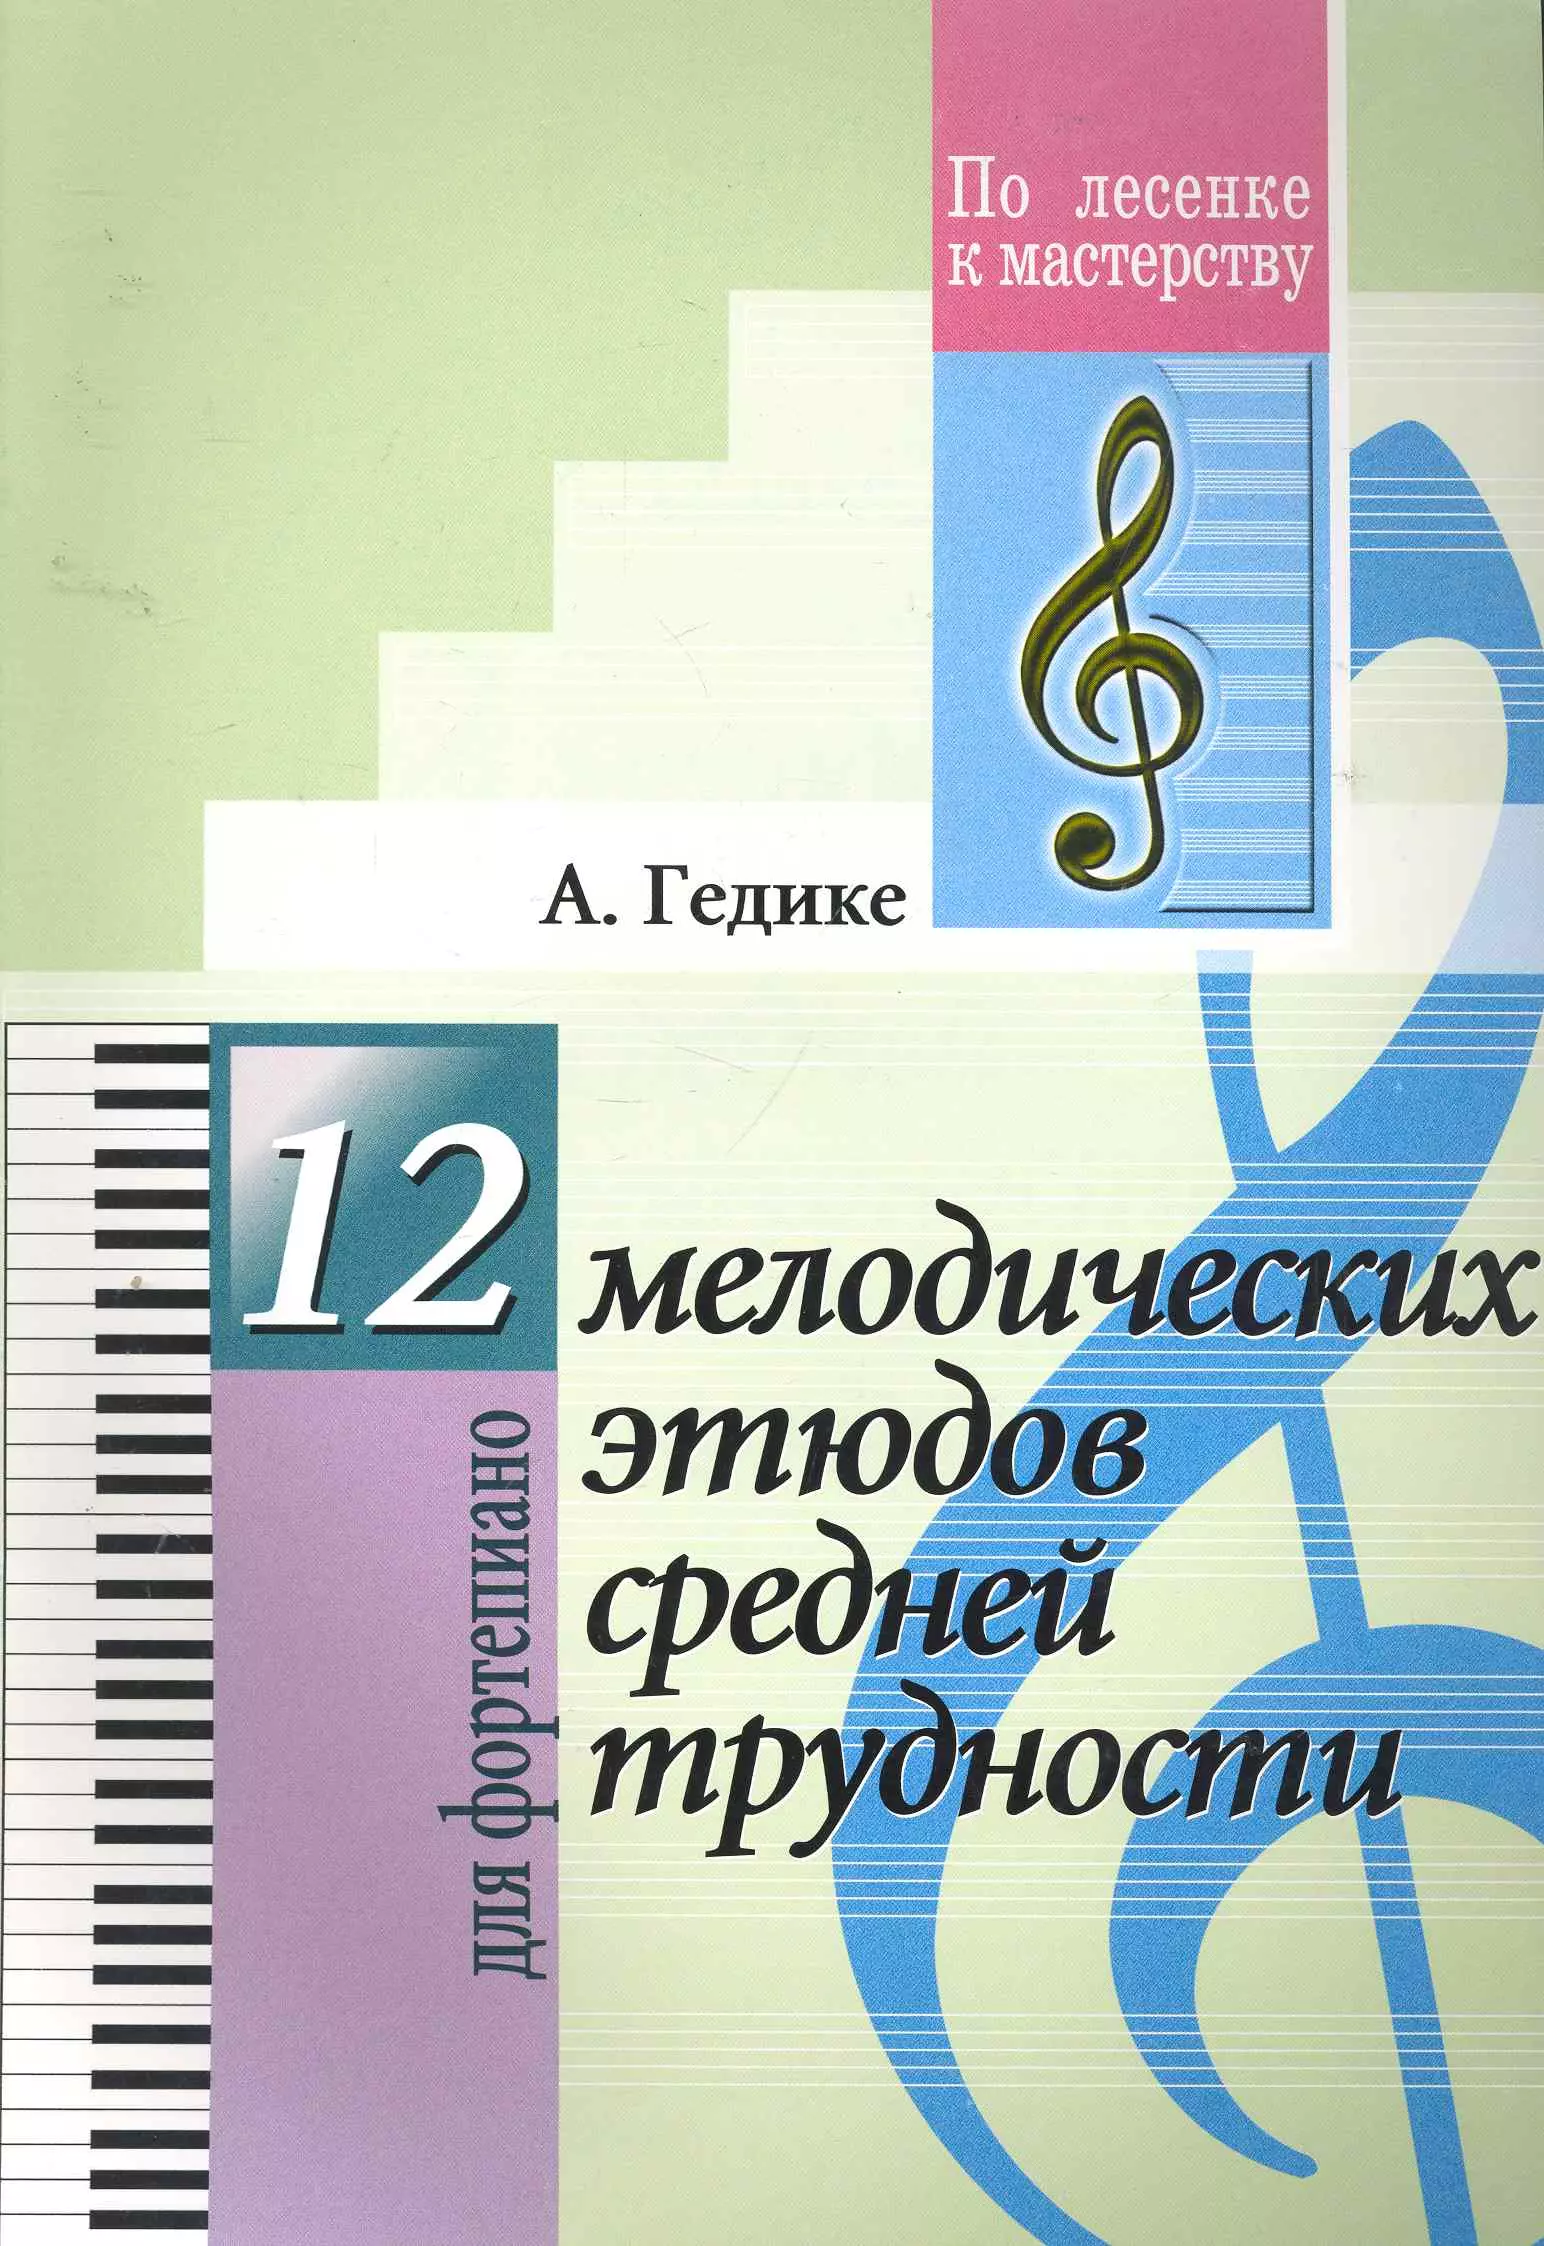 Гедике Александр Федорович - 12 мелодических этюдов средней трудности. Для фортепиано.(Для учащихся ДМШ)